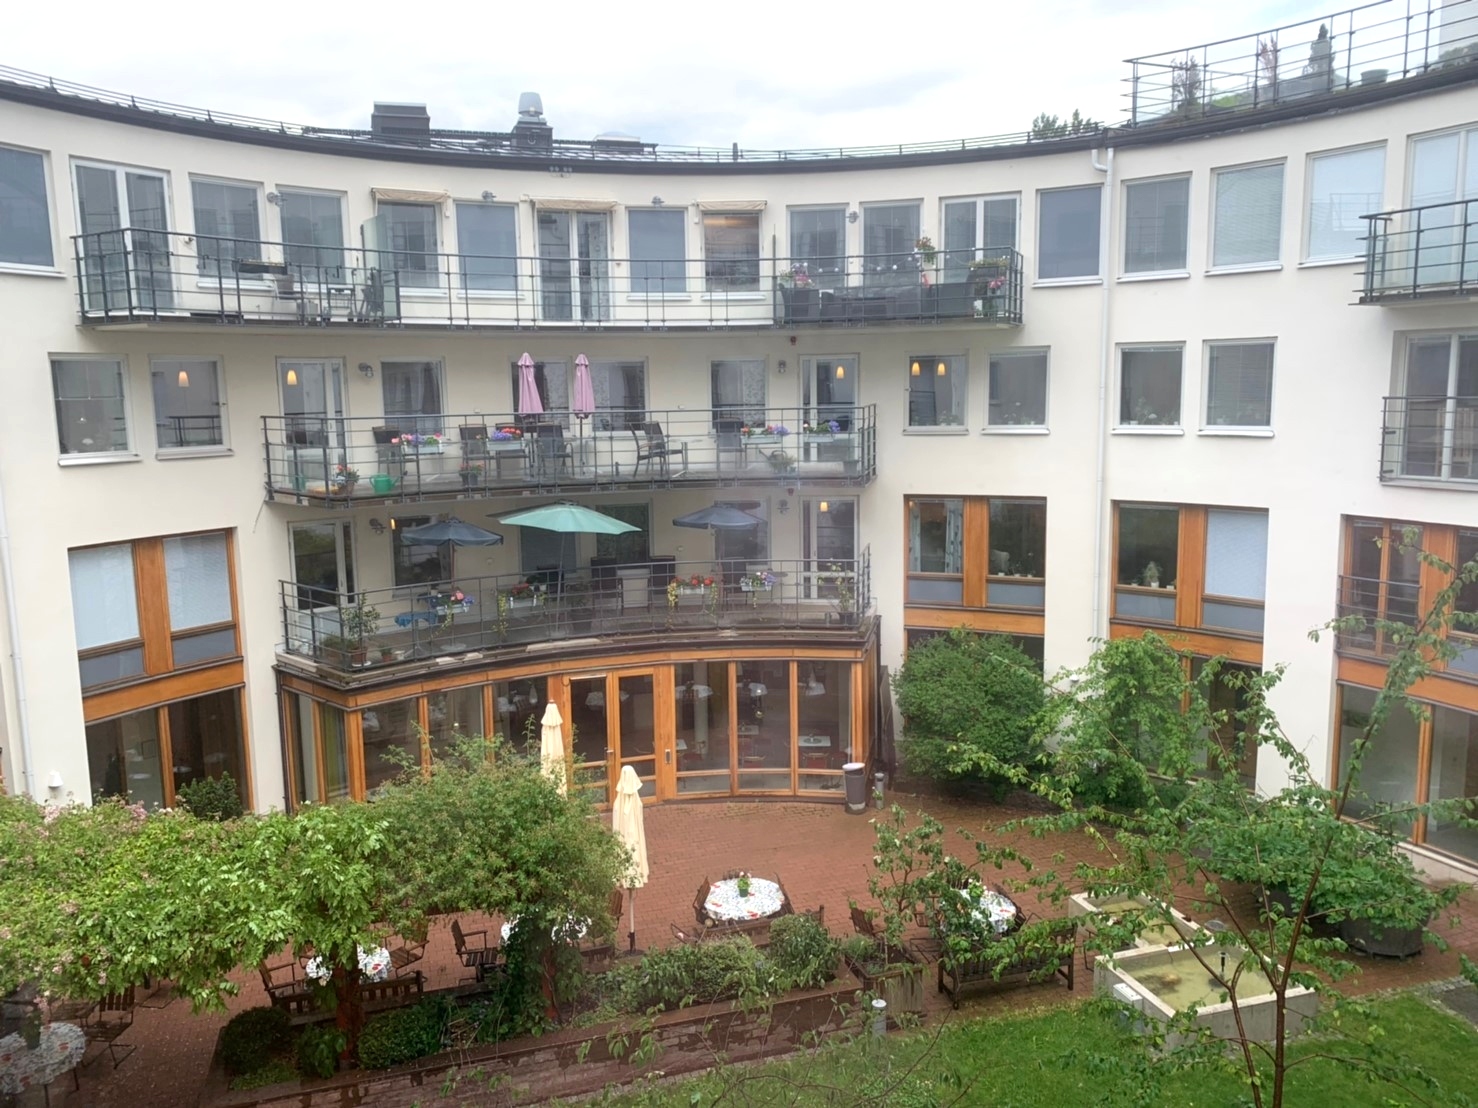 設計高雅，環境舒適，宛如五星級飯店的Löjtnantsgården老人照護中心。